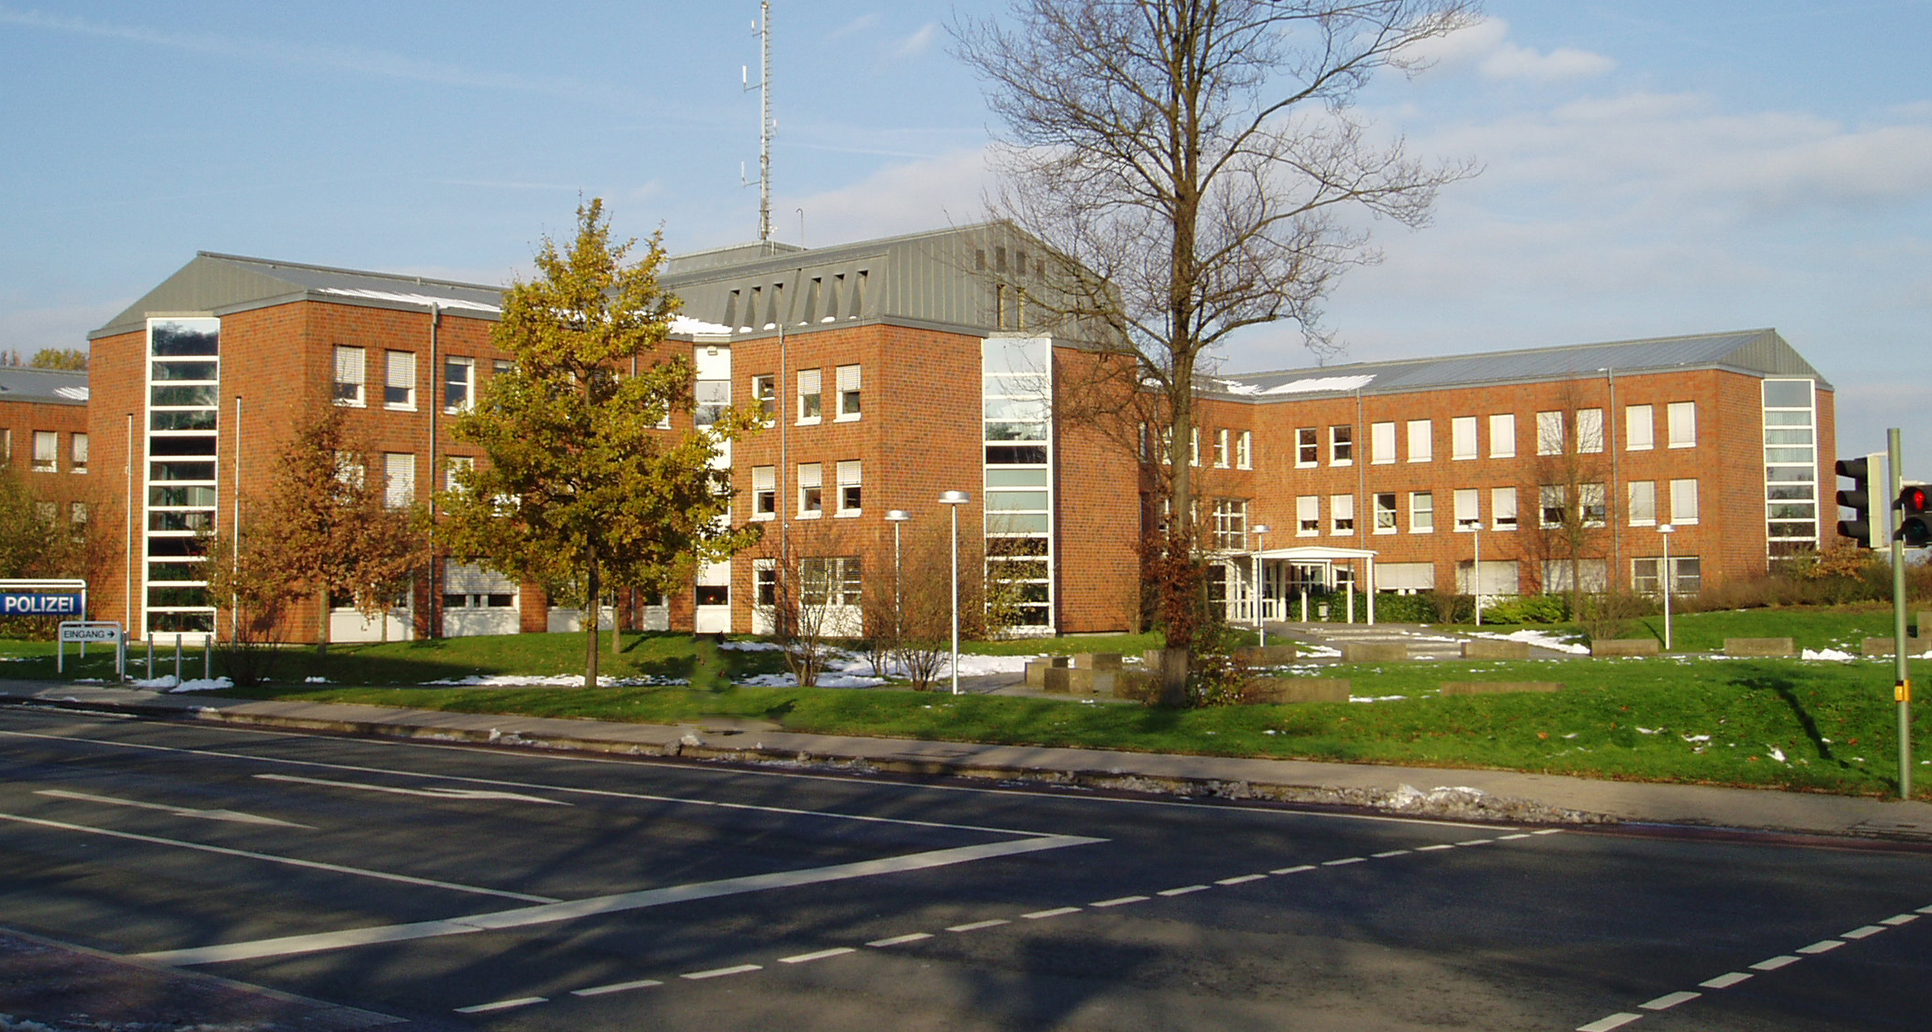 Bild zeigt das Polizeipräsidium Bielefeld